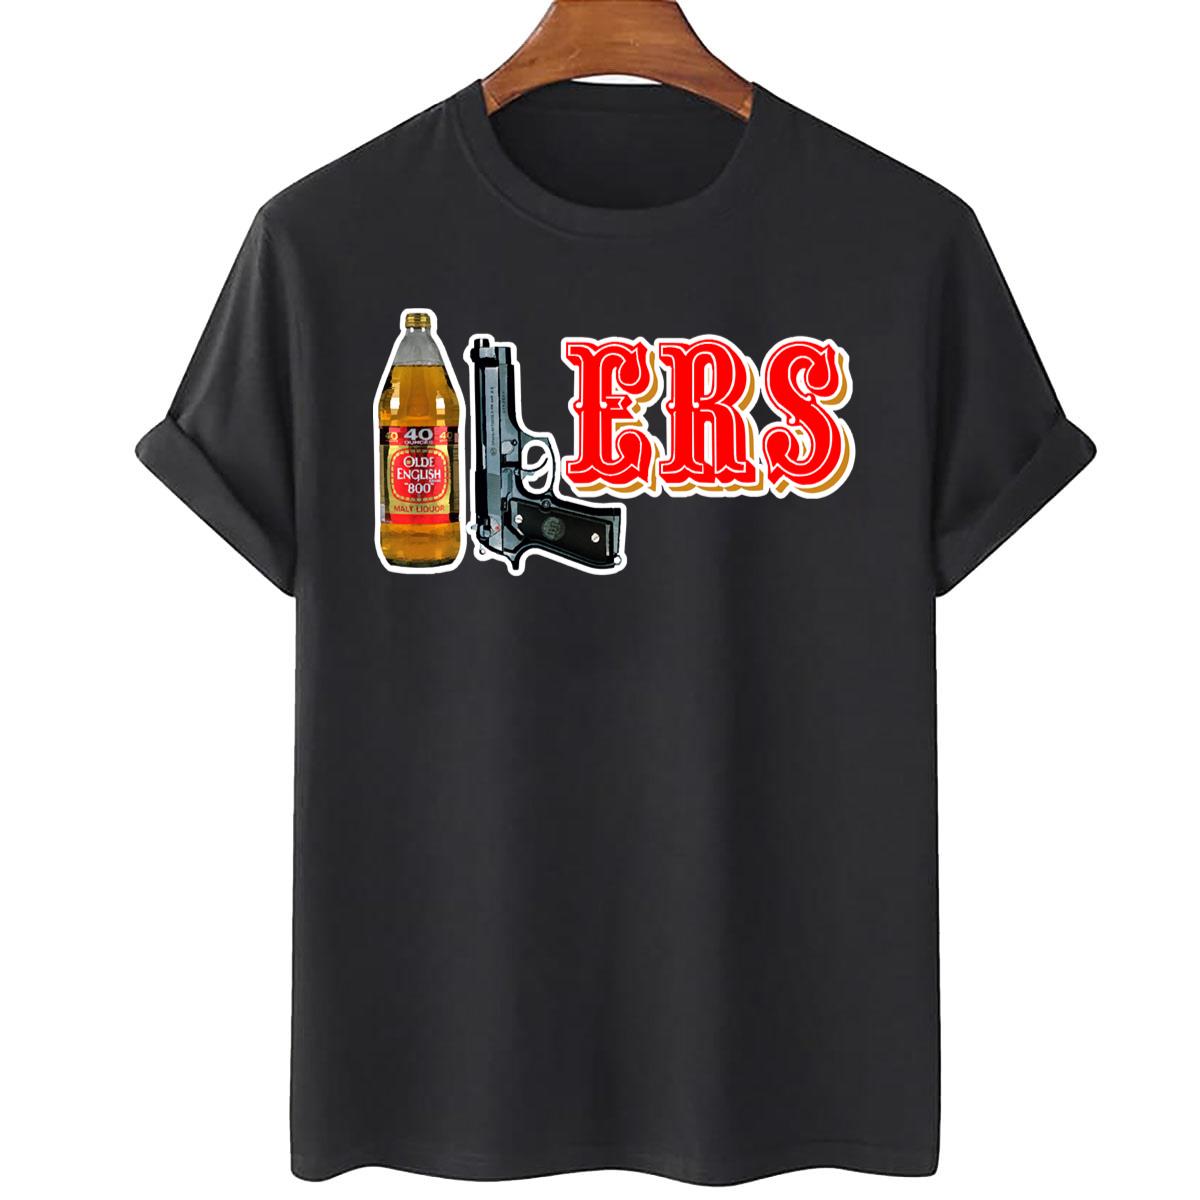 cool 49ers shirts